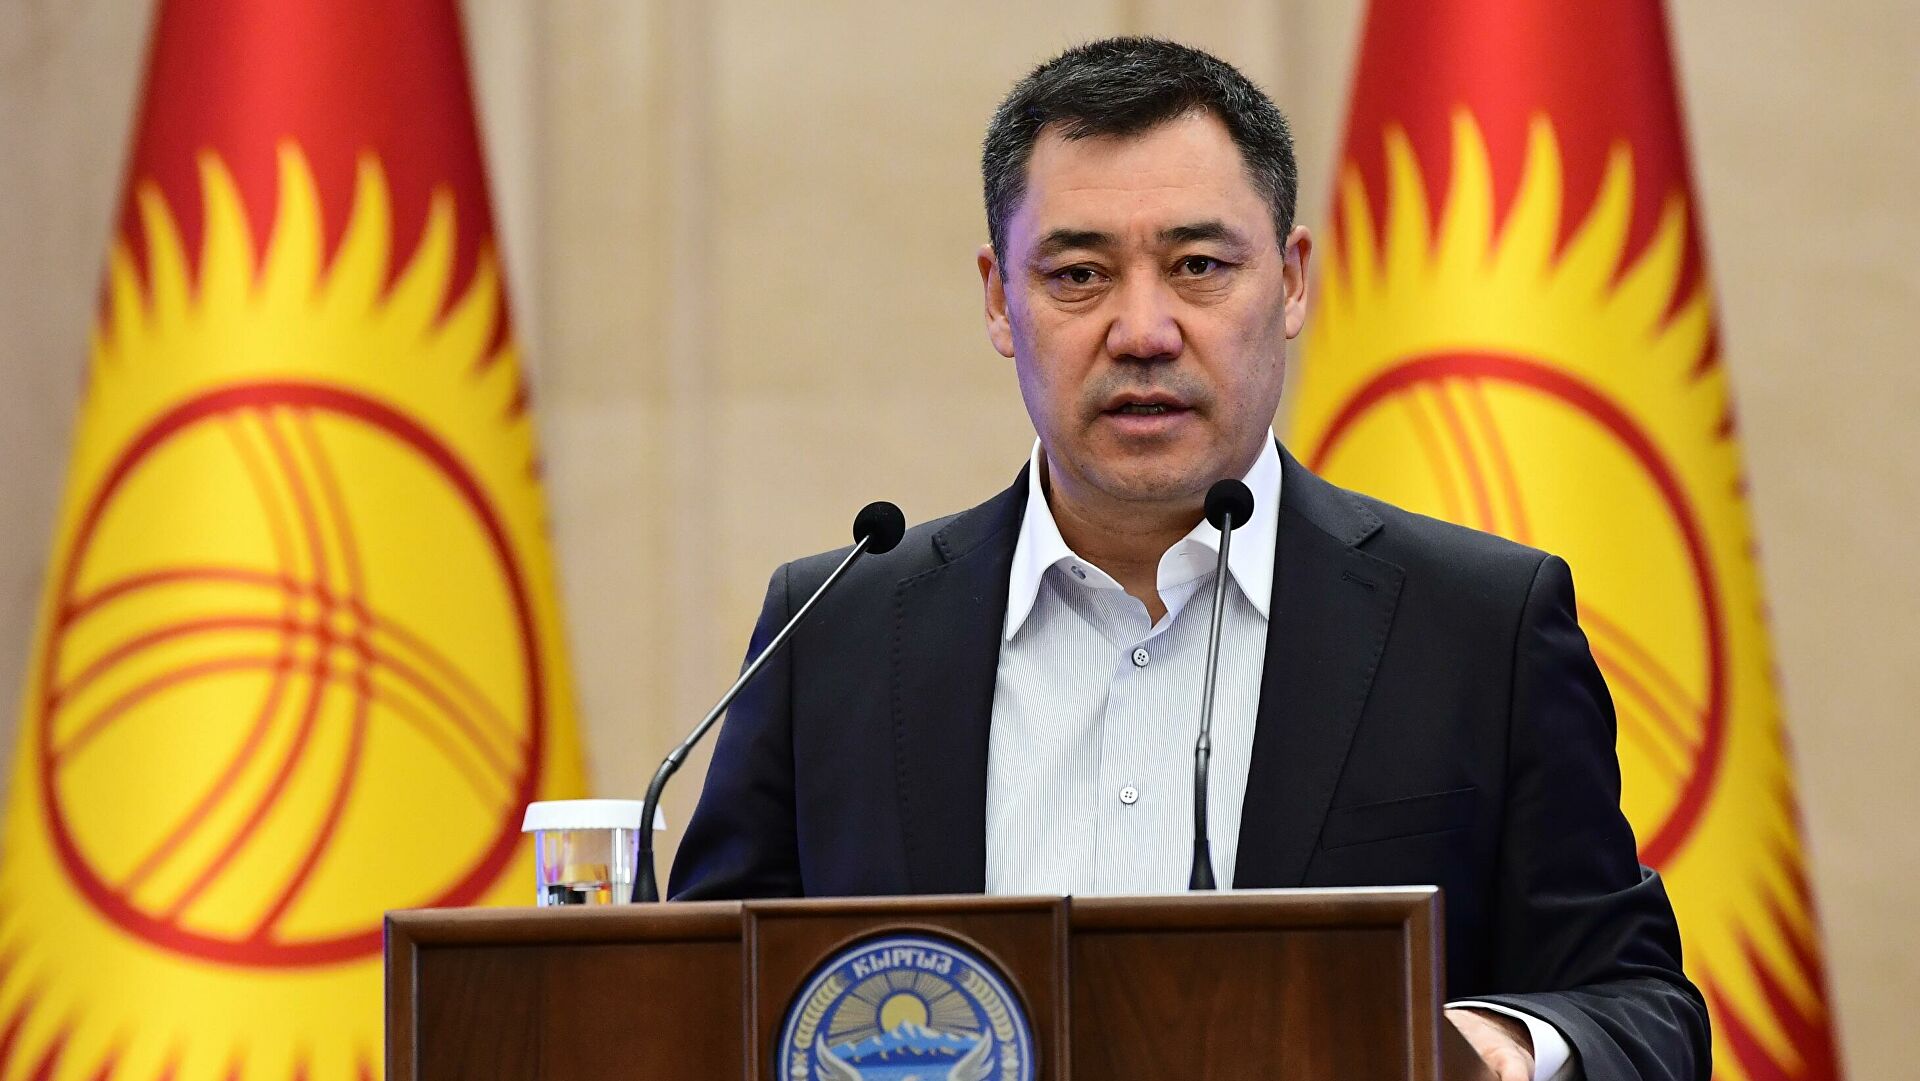 Взял краткосрочный отпуск: президент Киргизии пропустит заседание ОДКБ по Казахстану